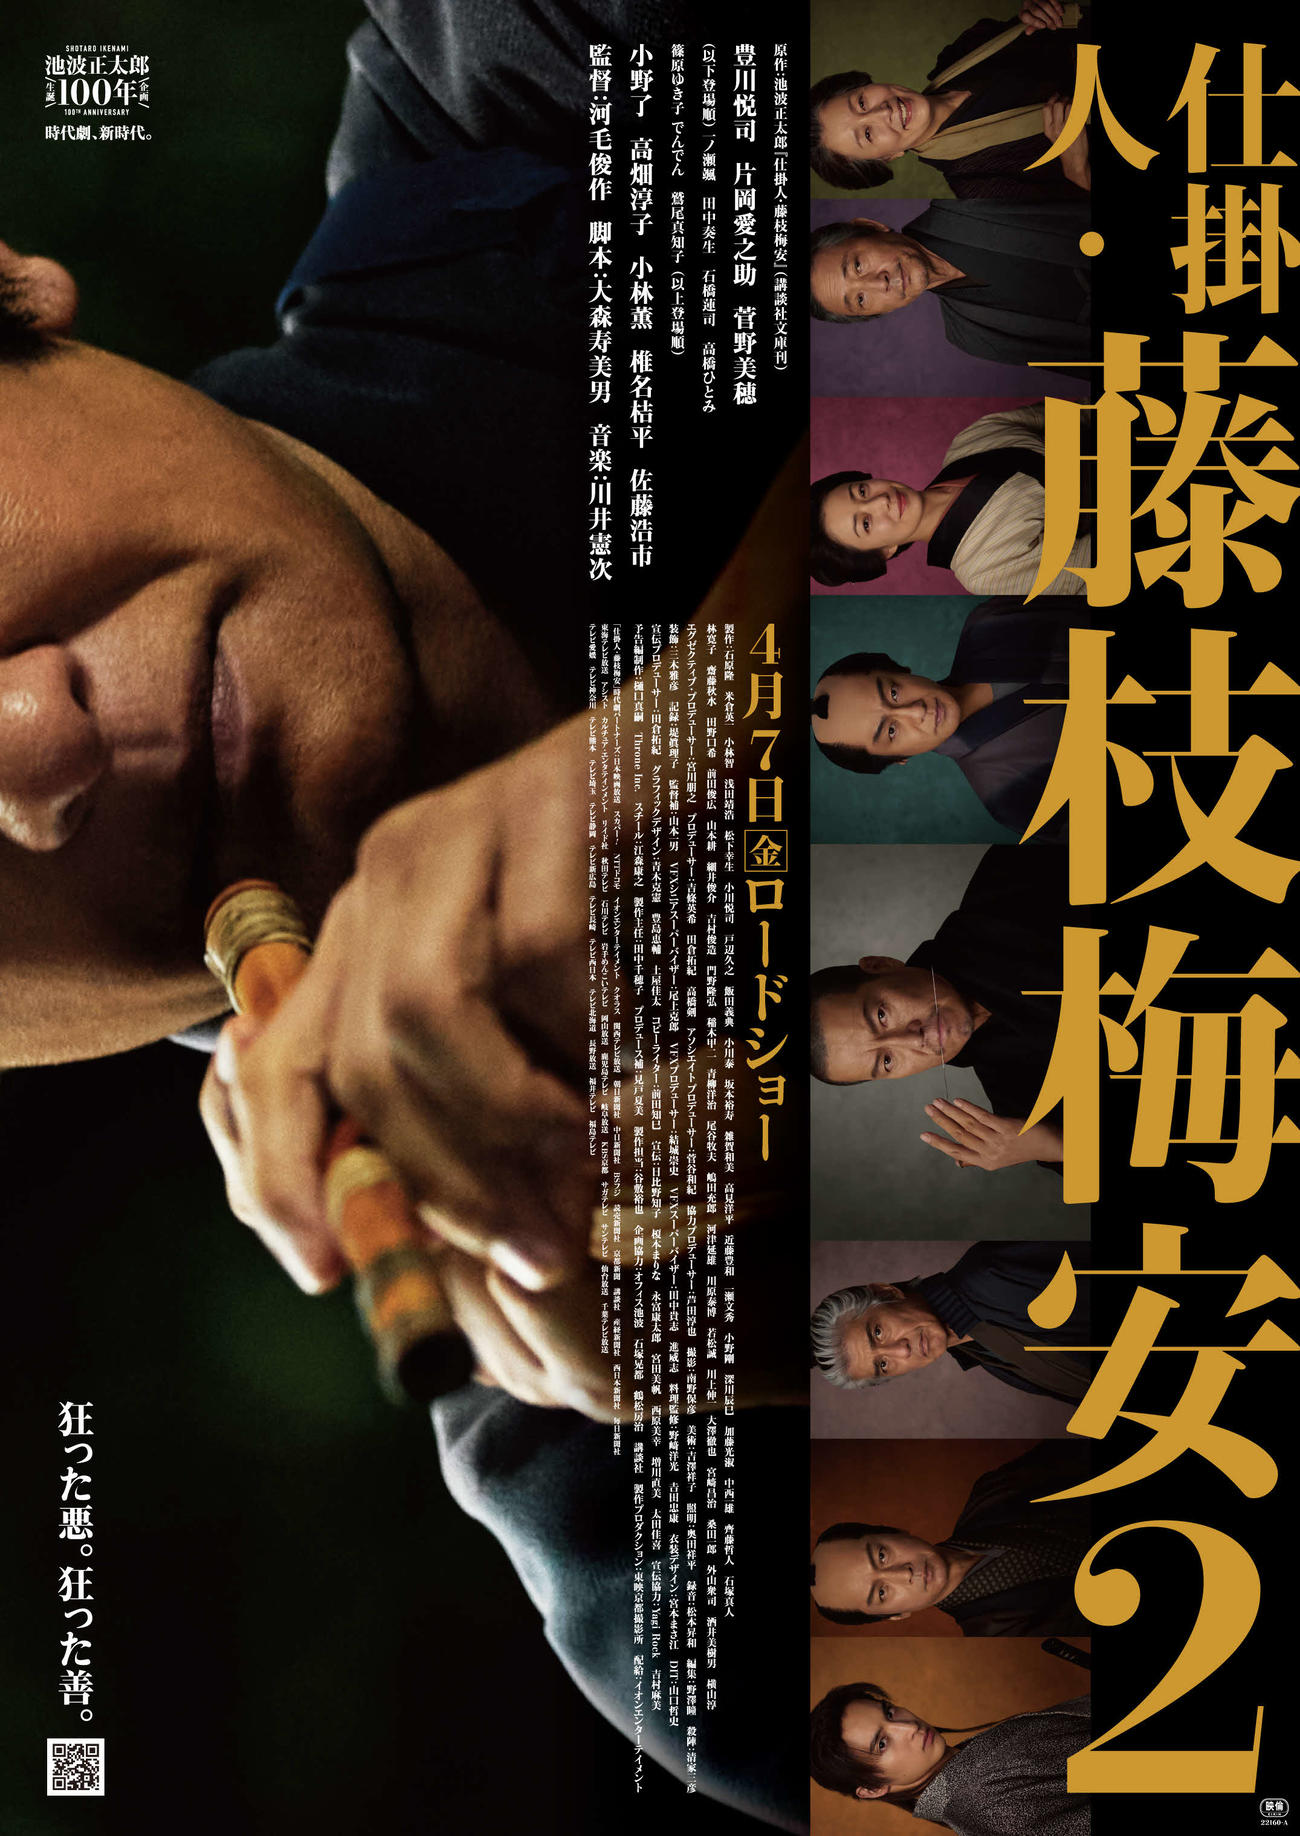 映画「仕掛人・藤枝梅安」2作目の第2弾ビジュアル。片岡愛之助演じる彦次郎をフューチャー